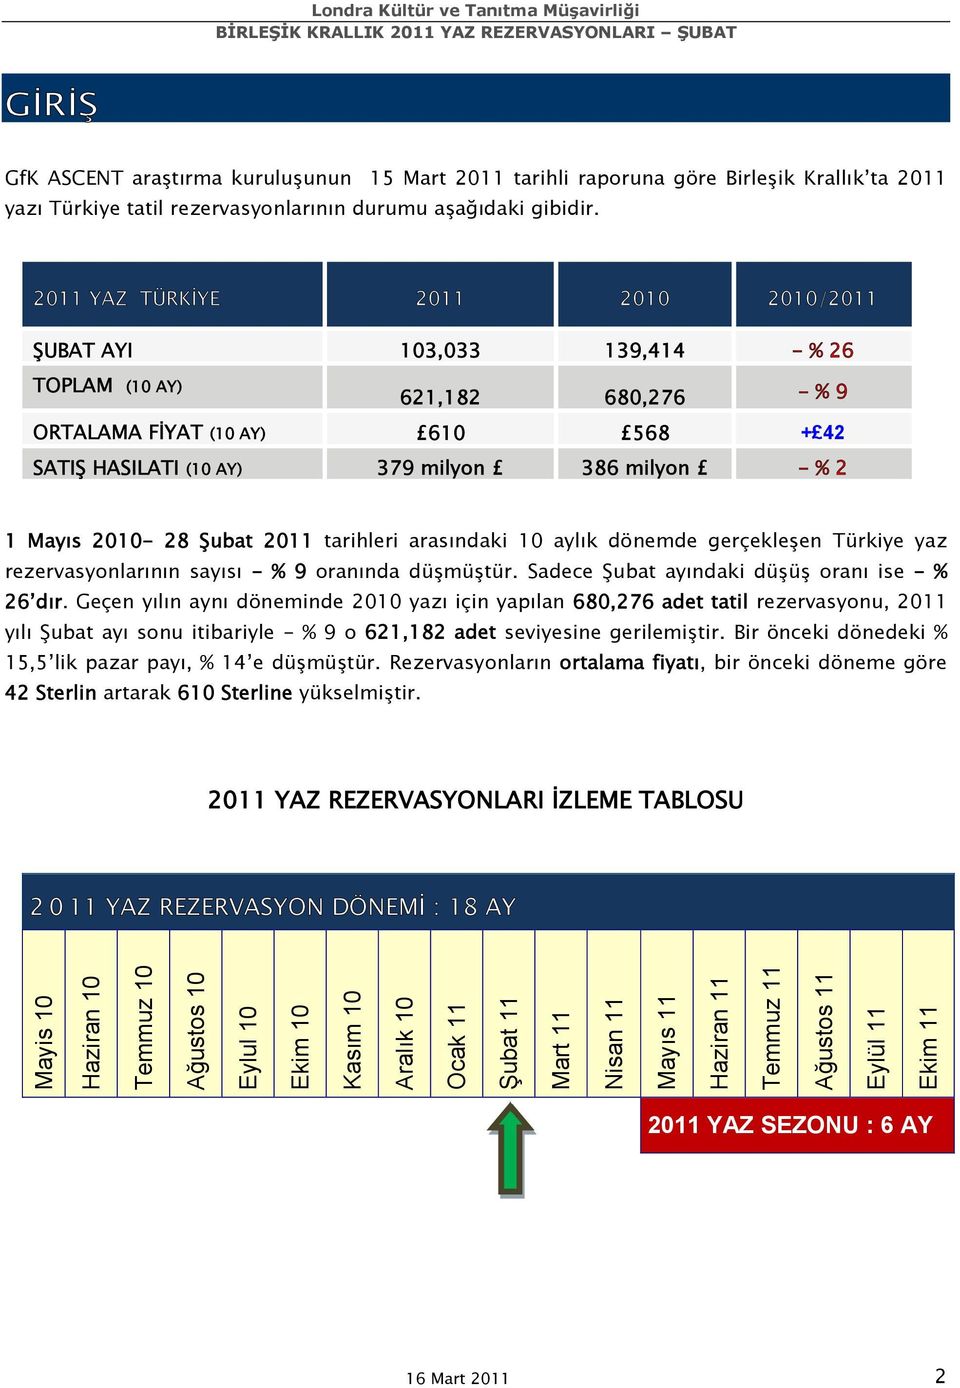 Mayıs 2010-28 Şubat 2011 tarihleri arasındaki 10 aylık dönemde gerçekleşen Türkiye yaz rezervasyonlarının sayısı - % 9 oranında düşmüştür. Sadece Şubat ayındaki düşüş oranı ise - % 26 dır.